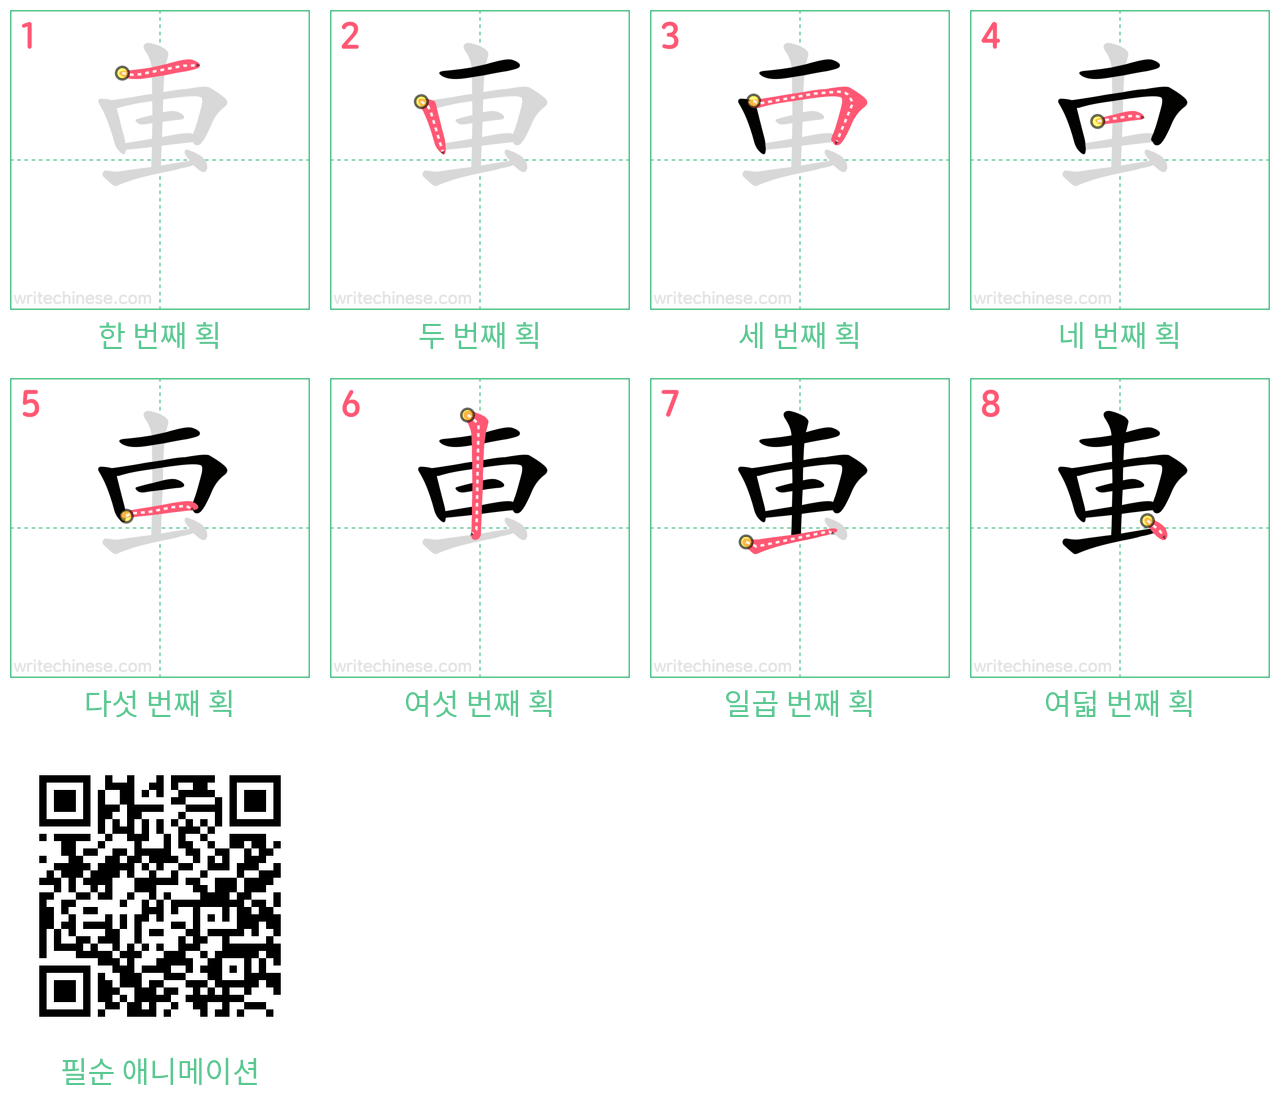 叀 step-by-step stroke order diagrams